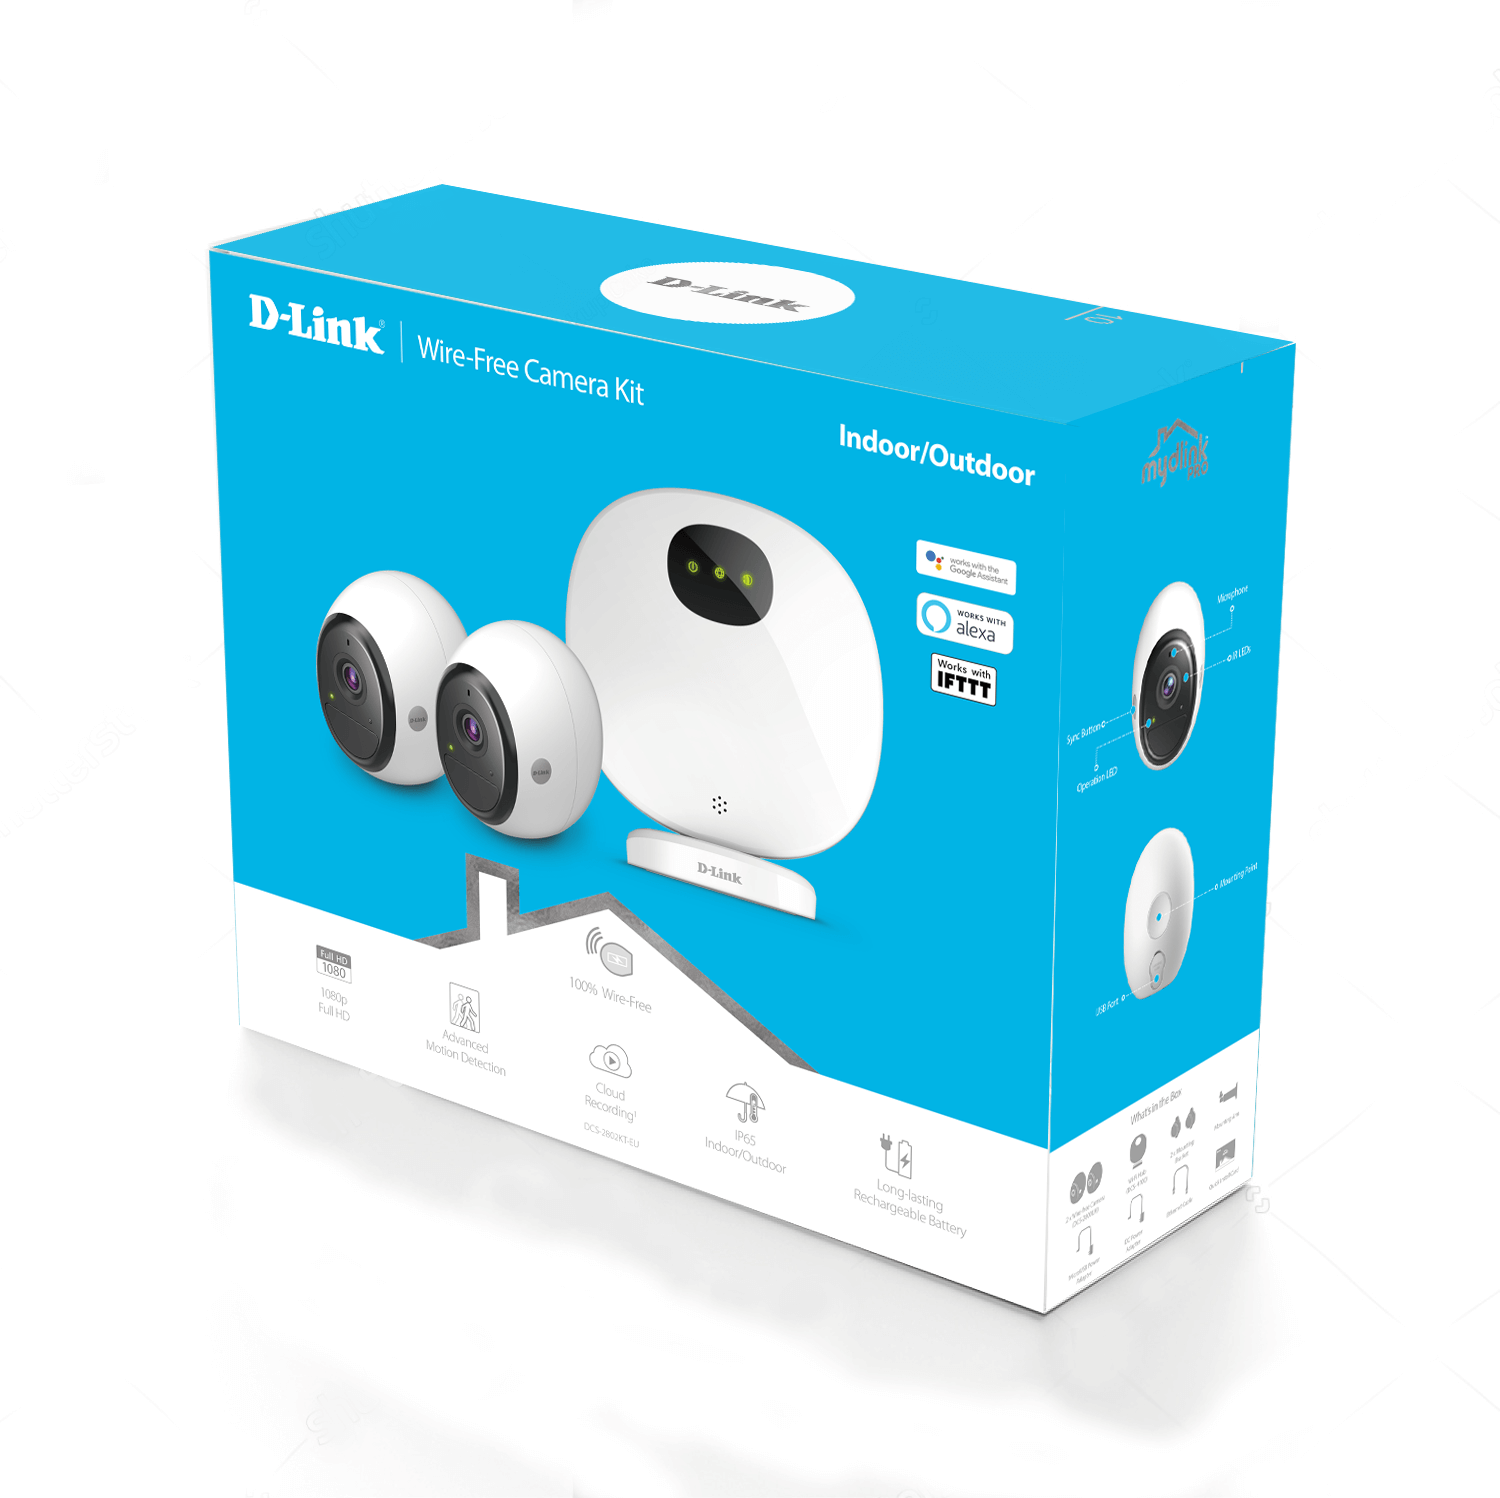 DCS-2802KT-EU mydlink™ Pro Wire-Free Camera Kit